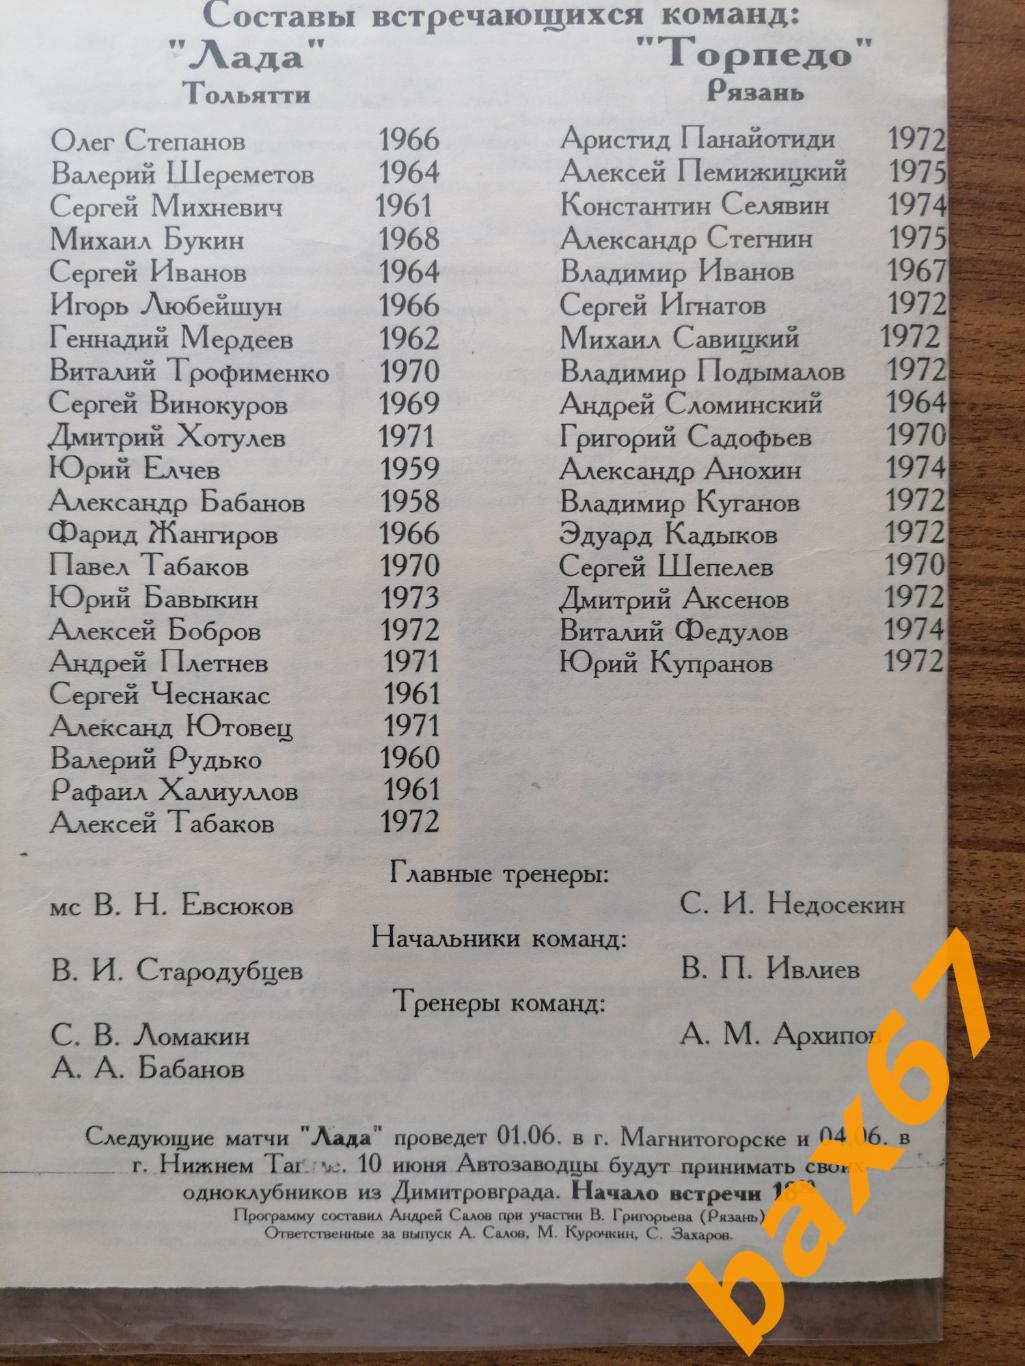 Лада Тольятти - Торпедо Рязань 24.05.1993 КЛФ 1